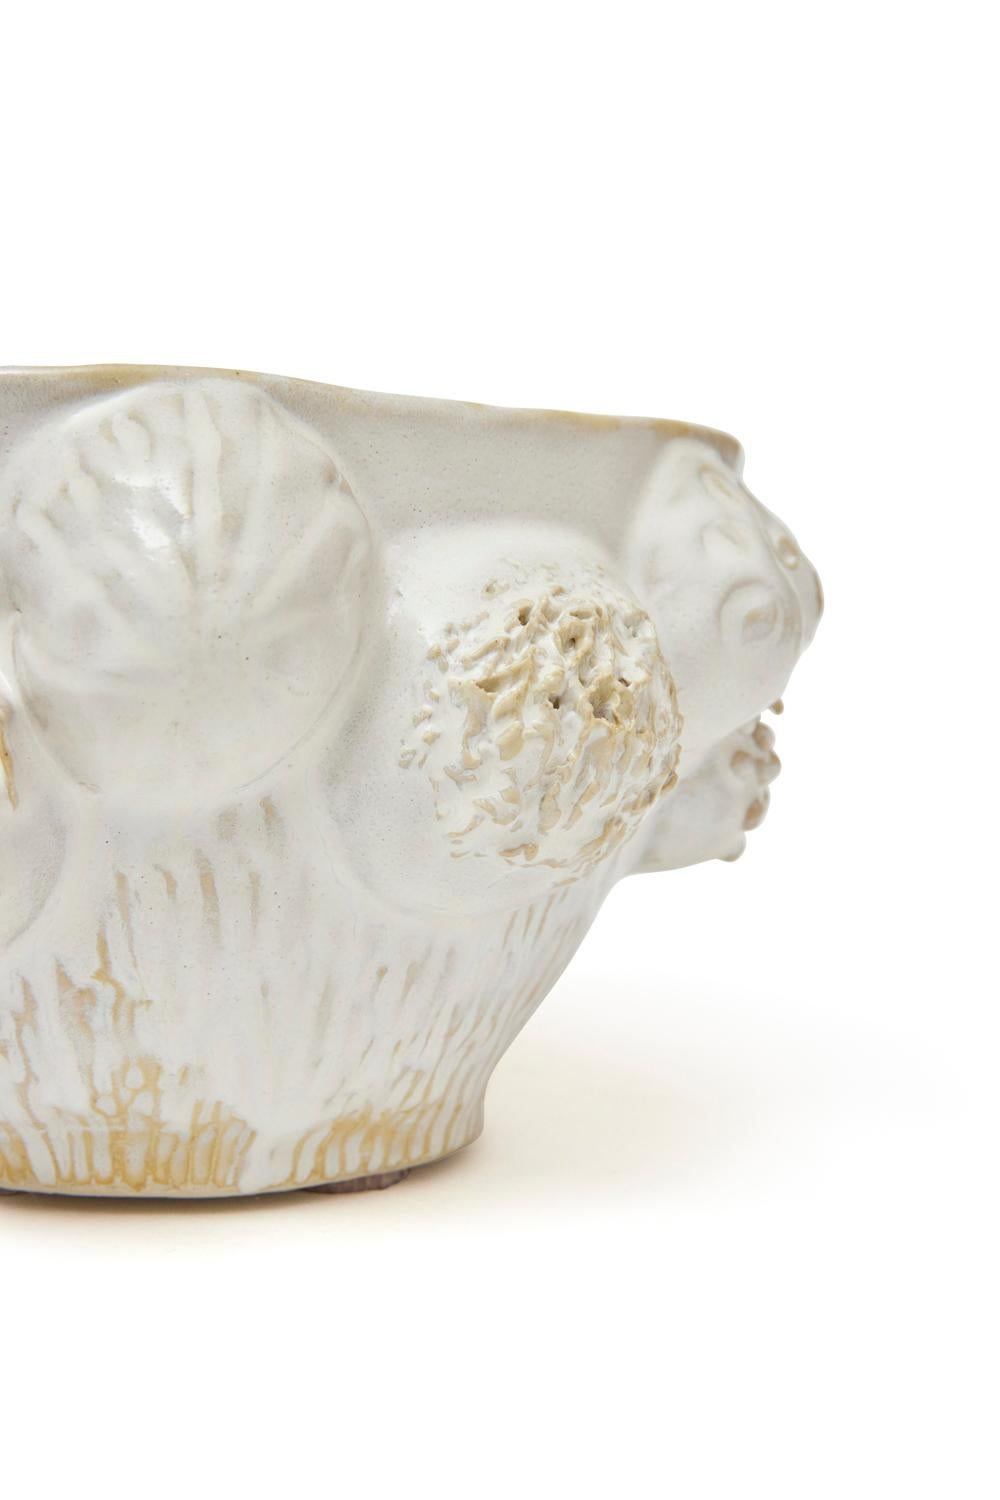 Botanica Bowl in Glazed Ceramic by Trish DeMasi For Sale 2